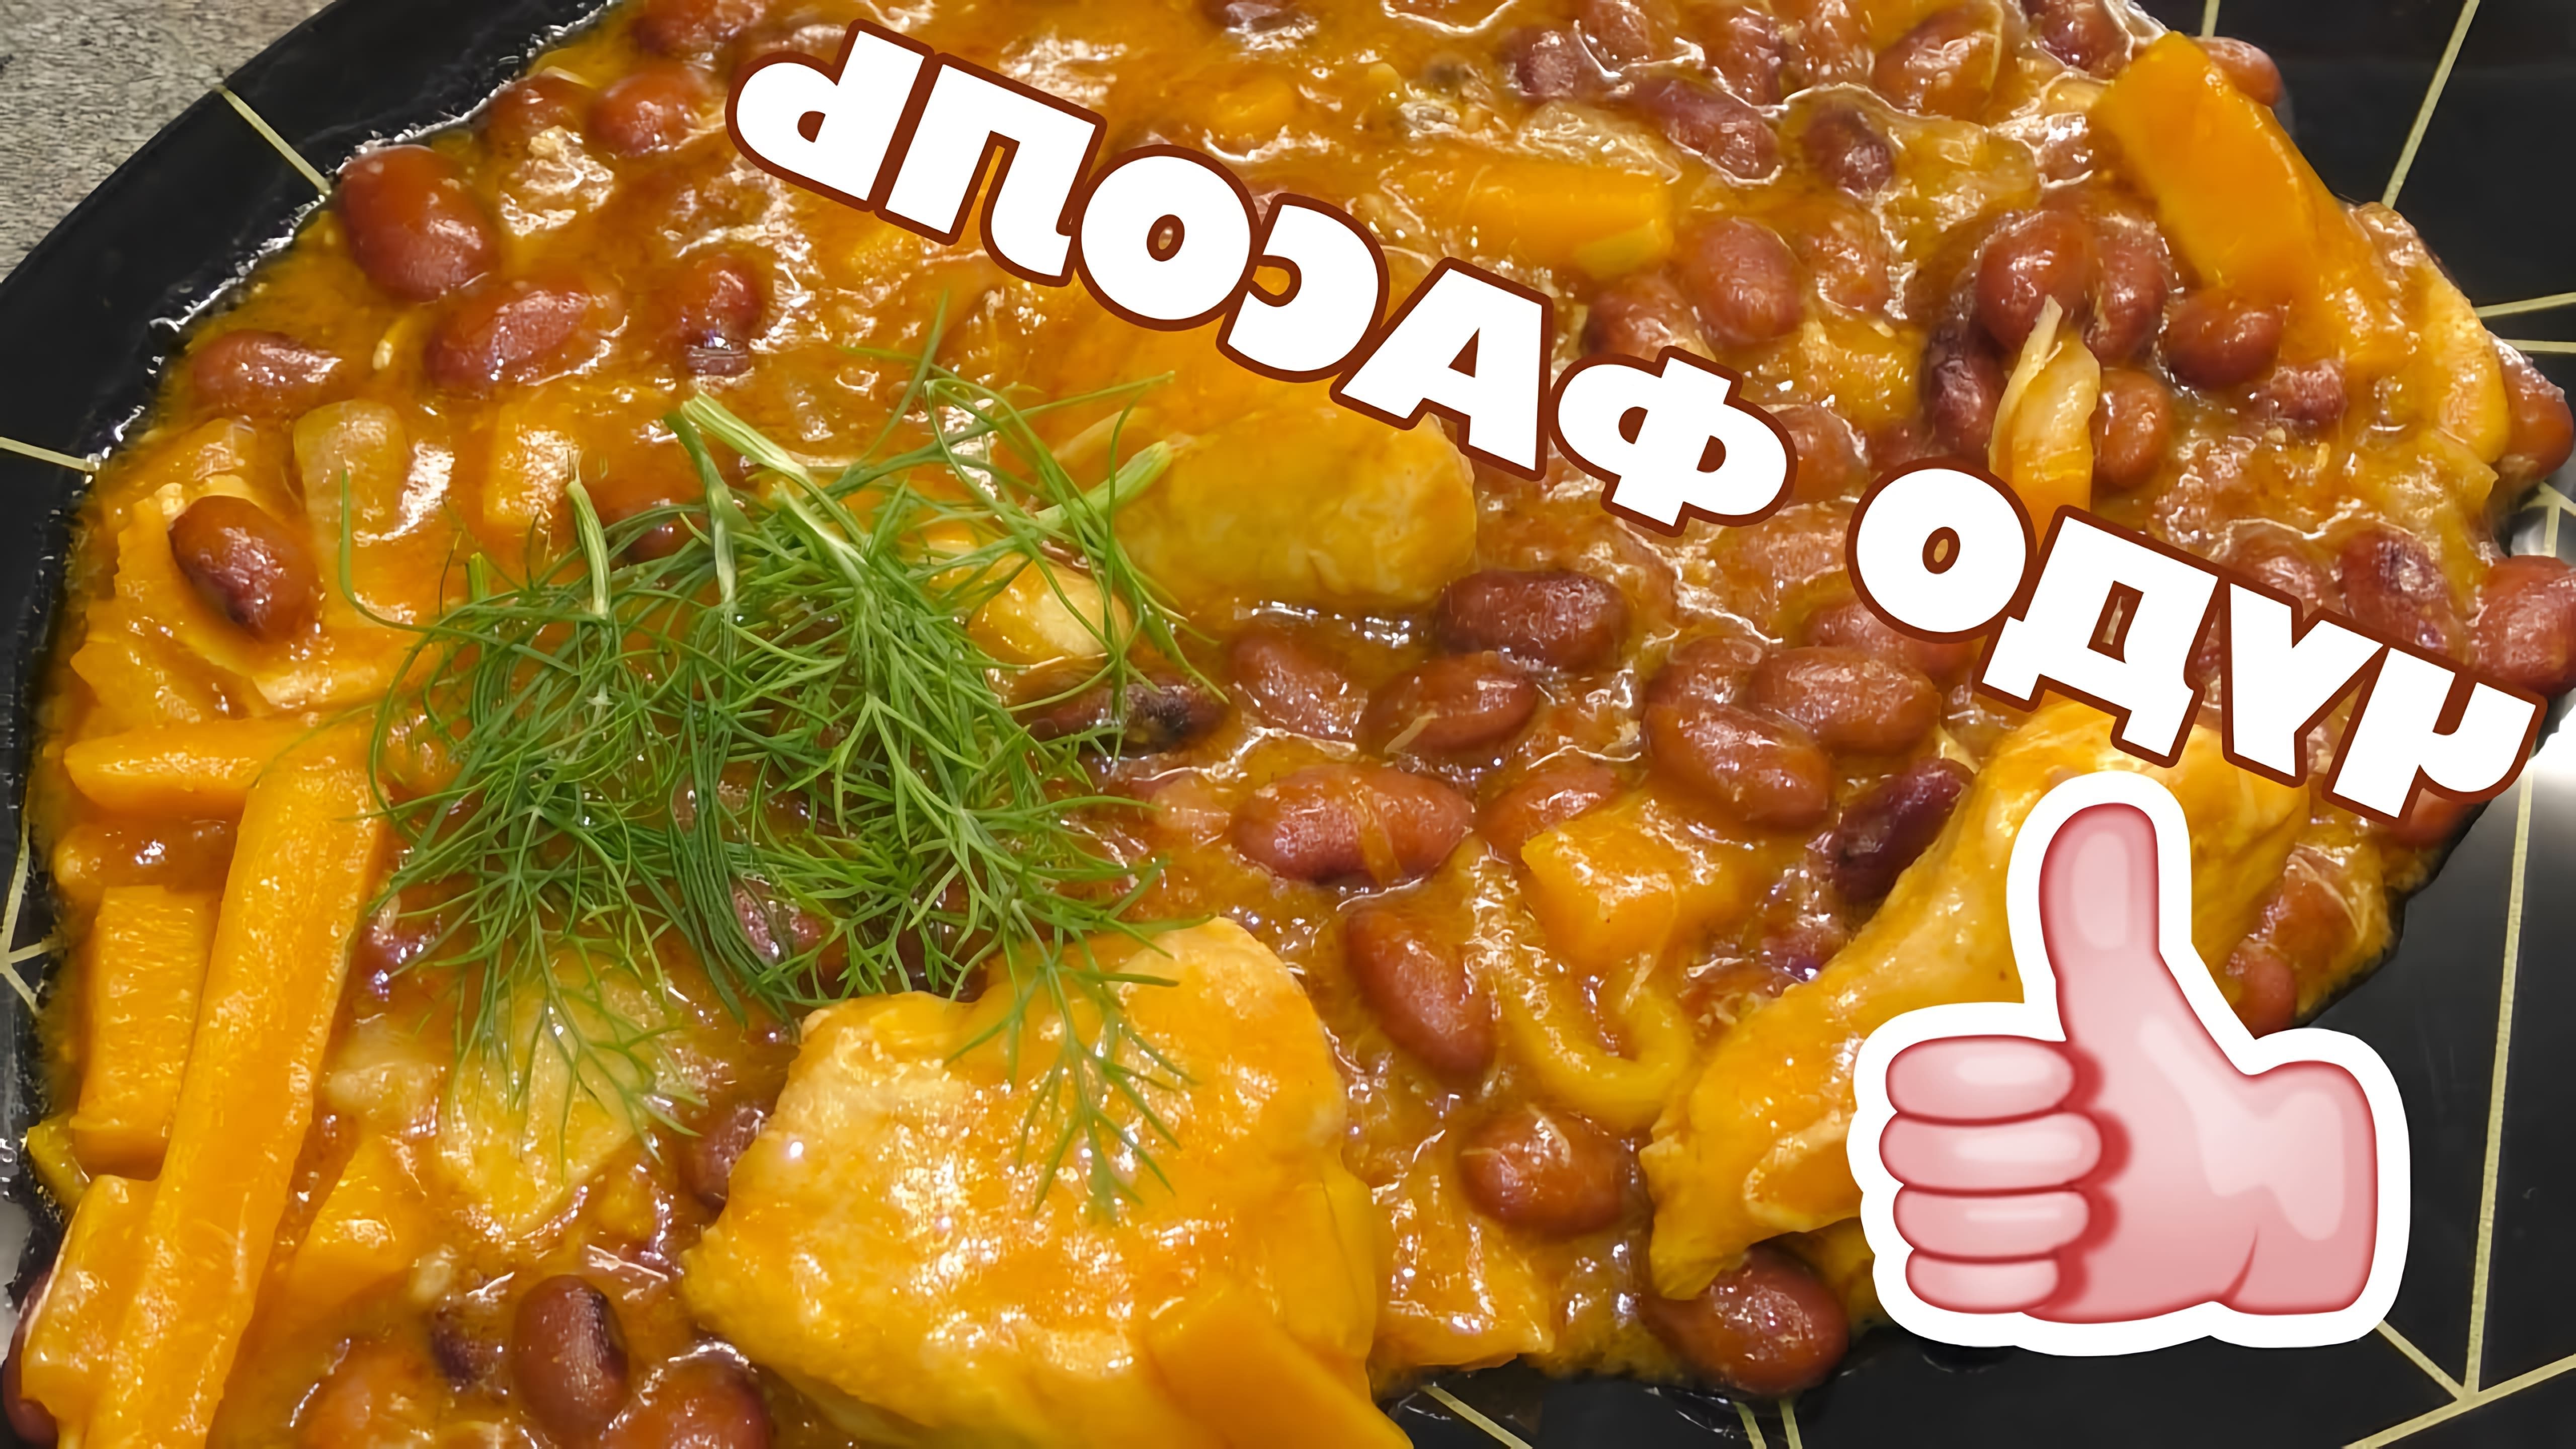 В этом видео демонстрируется рецепт приготовления лобио - блюда из красной фасоли в томатном соусе с курицей